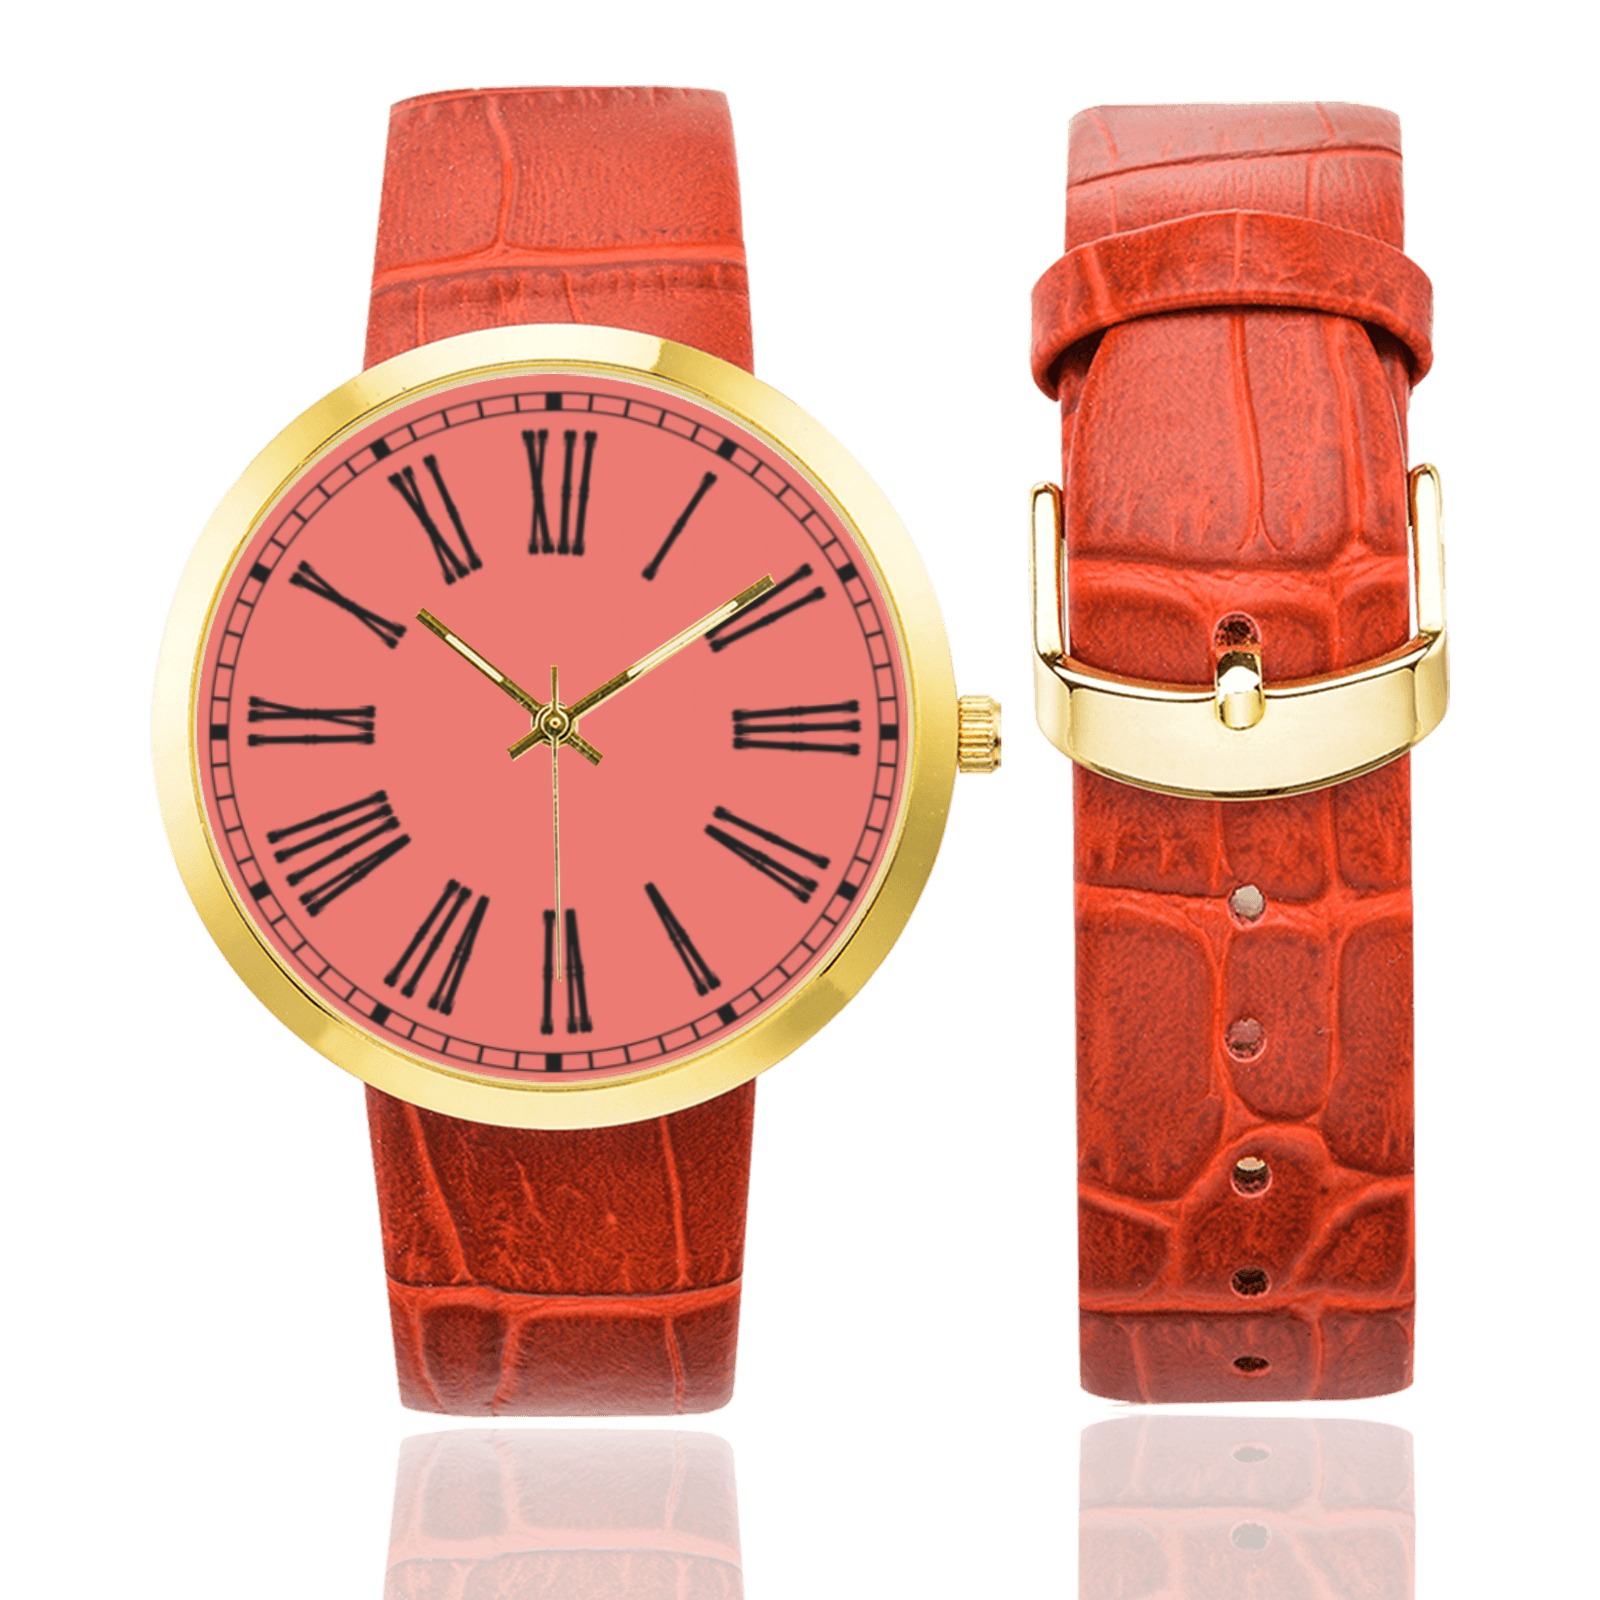 ELEGANCIA Women's Golden Leather Strap Watch(Model 212)